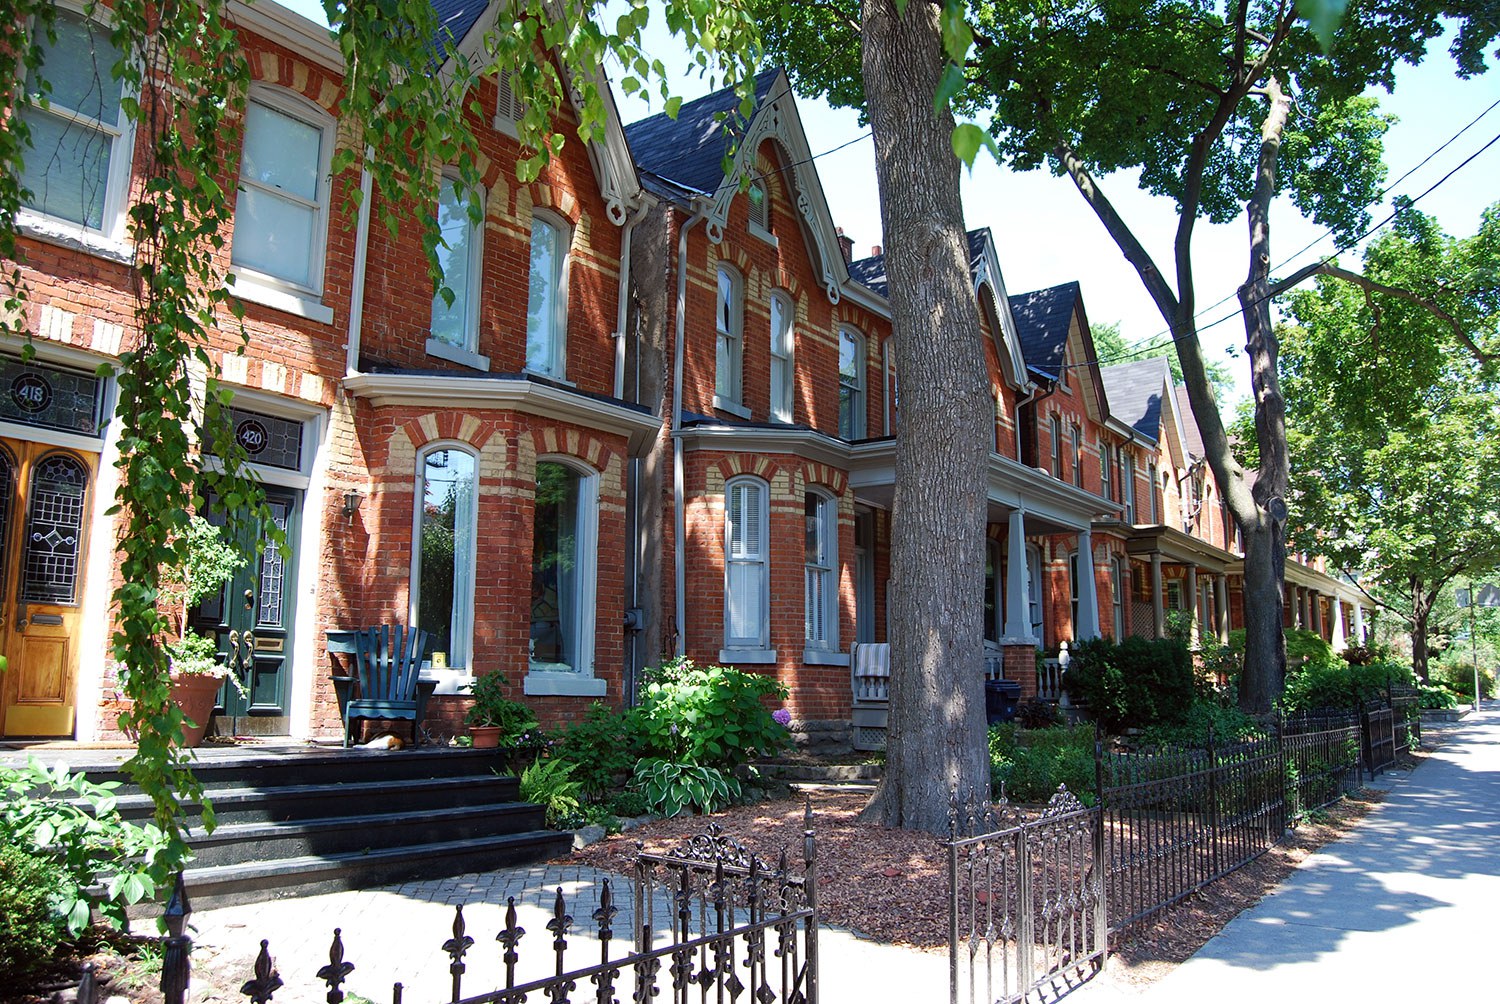 Toronto compte actuellement 20 DCP pleinement en vigueur, soit le plus grand nombre de districts de tout l’Ontario. Le paysage de rue représenté sur la photo fait partie du DCP Yorkville-avenue Hazelton.